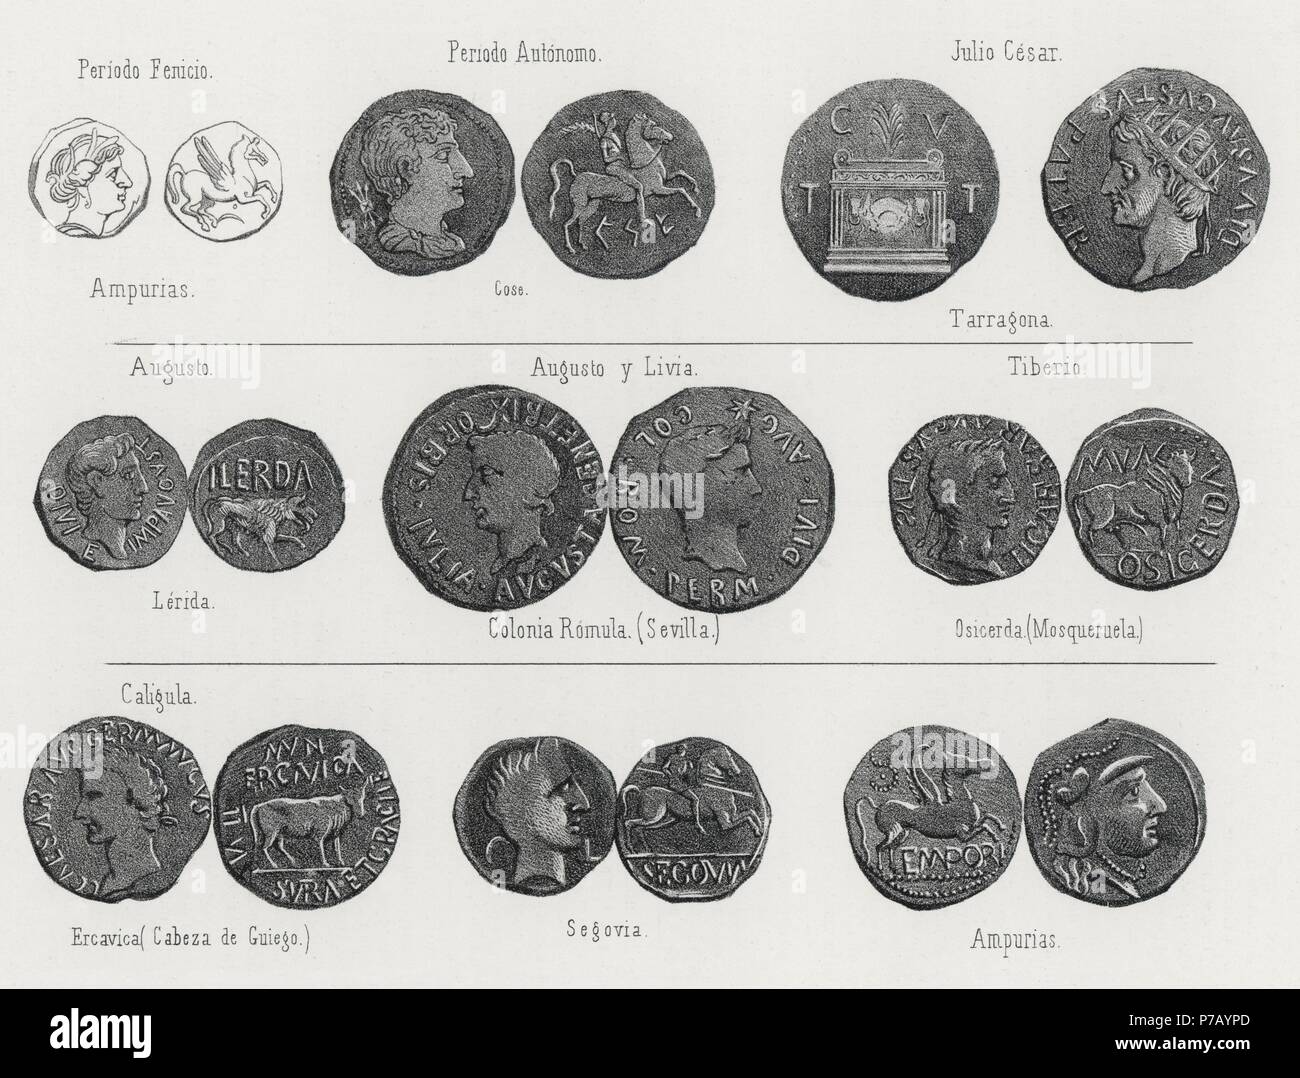 Historia. Monedas acuñadas en España. Grabado de 1871. Stock Photo